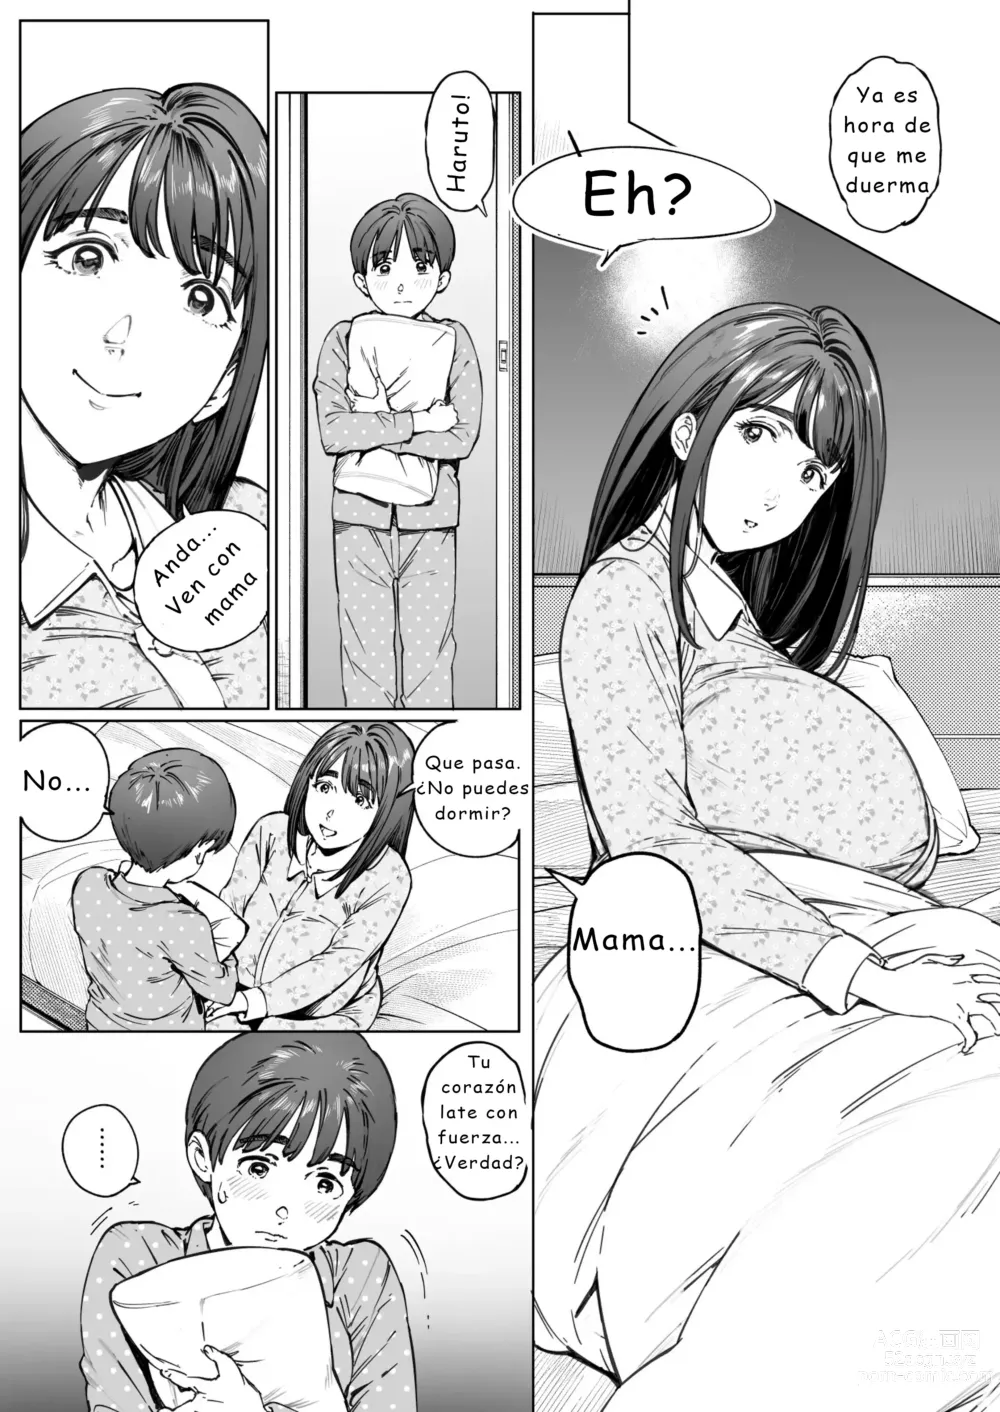 Page 9 of doujinshi Diario de observación cariñosa